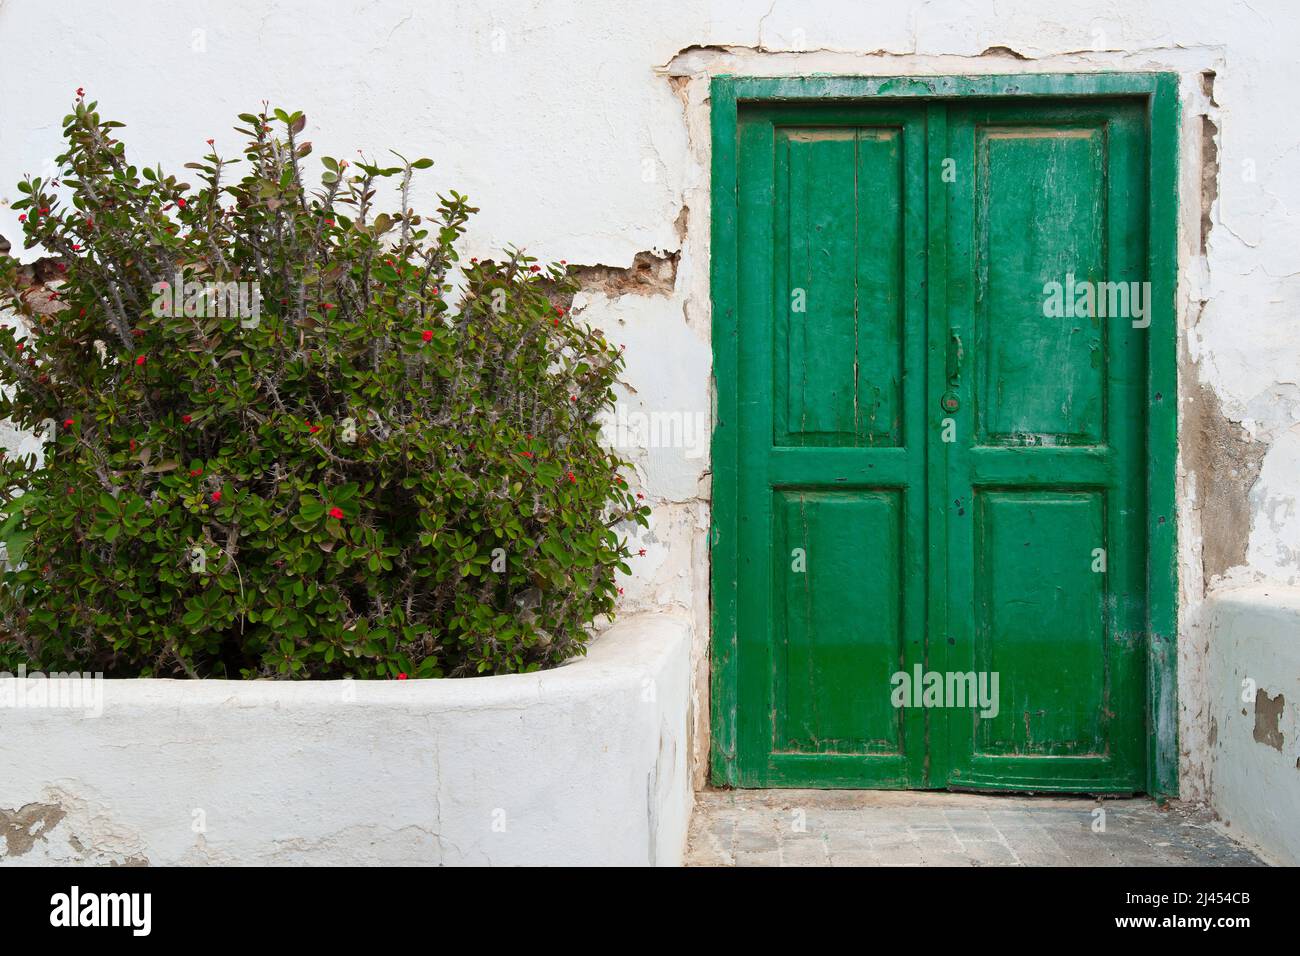 Typisches altes Weißes Haus mit farbigen Türen und Fenstern, Teguise, ehemalige Hauptszadt der Insel Lanzarote, kanarische Inseln, Kanaren, Spanien Foto Stock